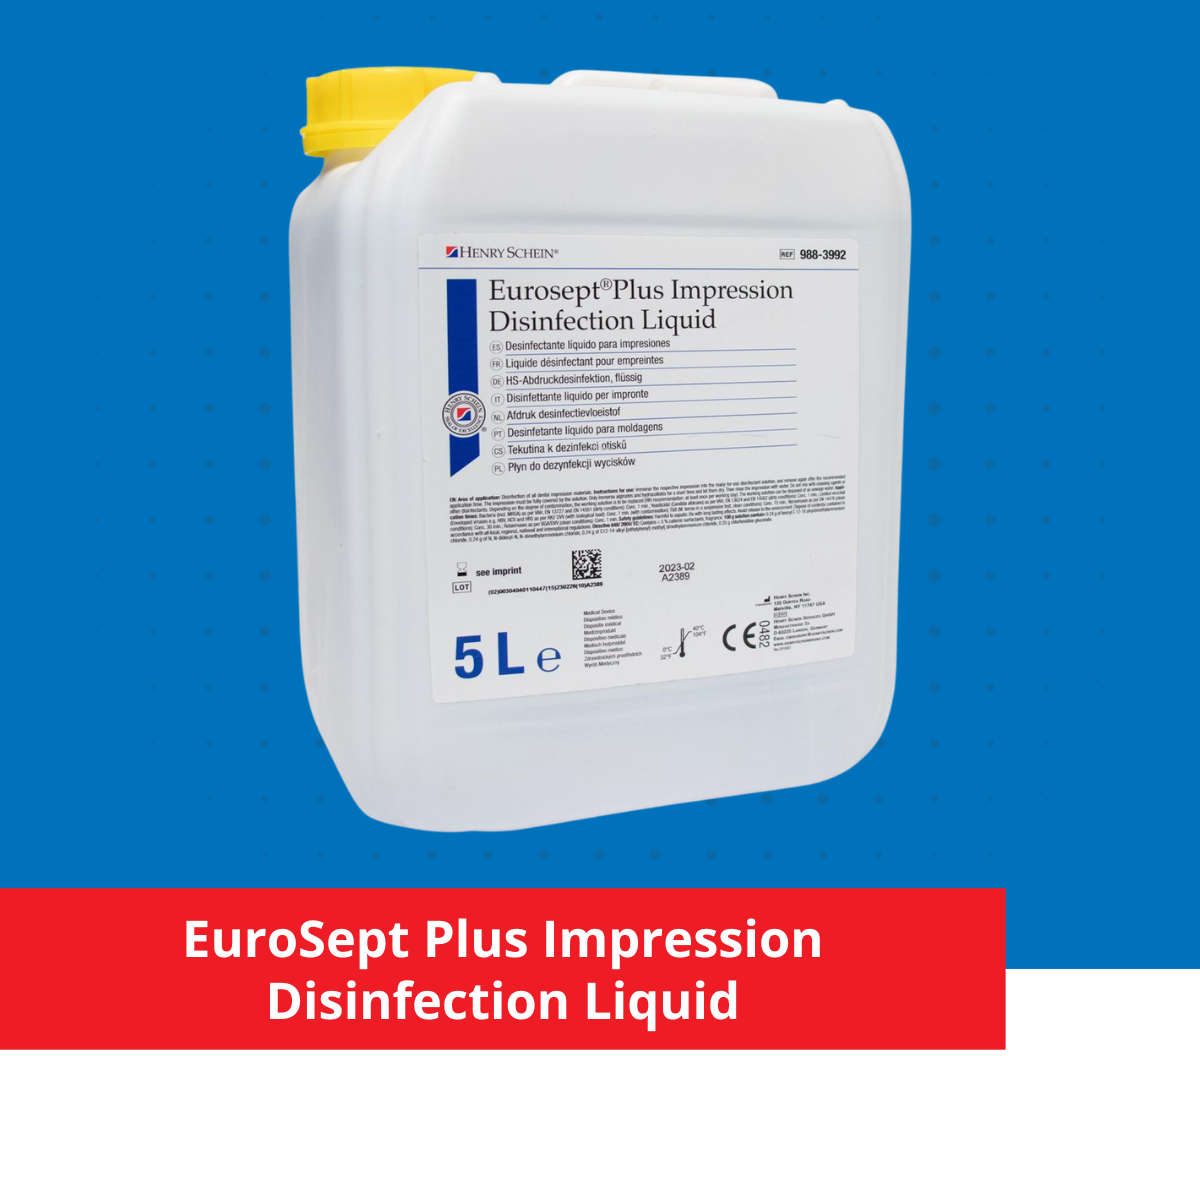 EuroSept Plus Impression Disinfection Liquid